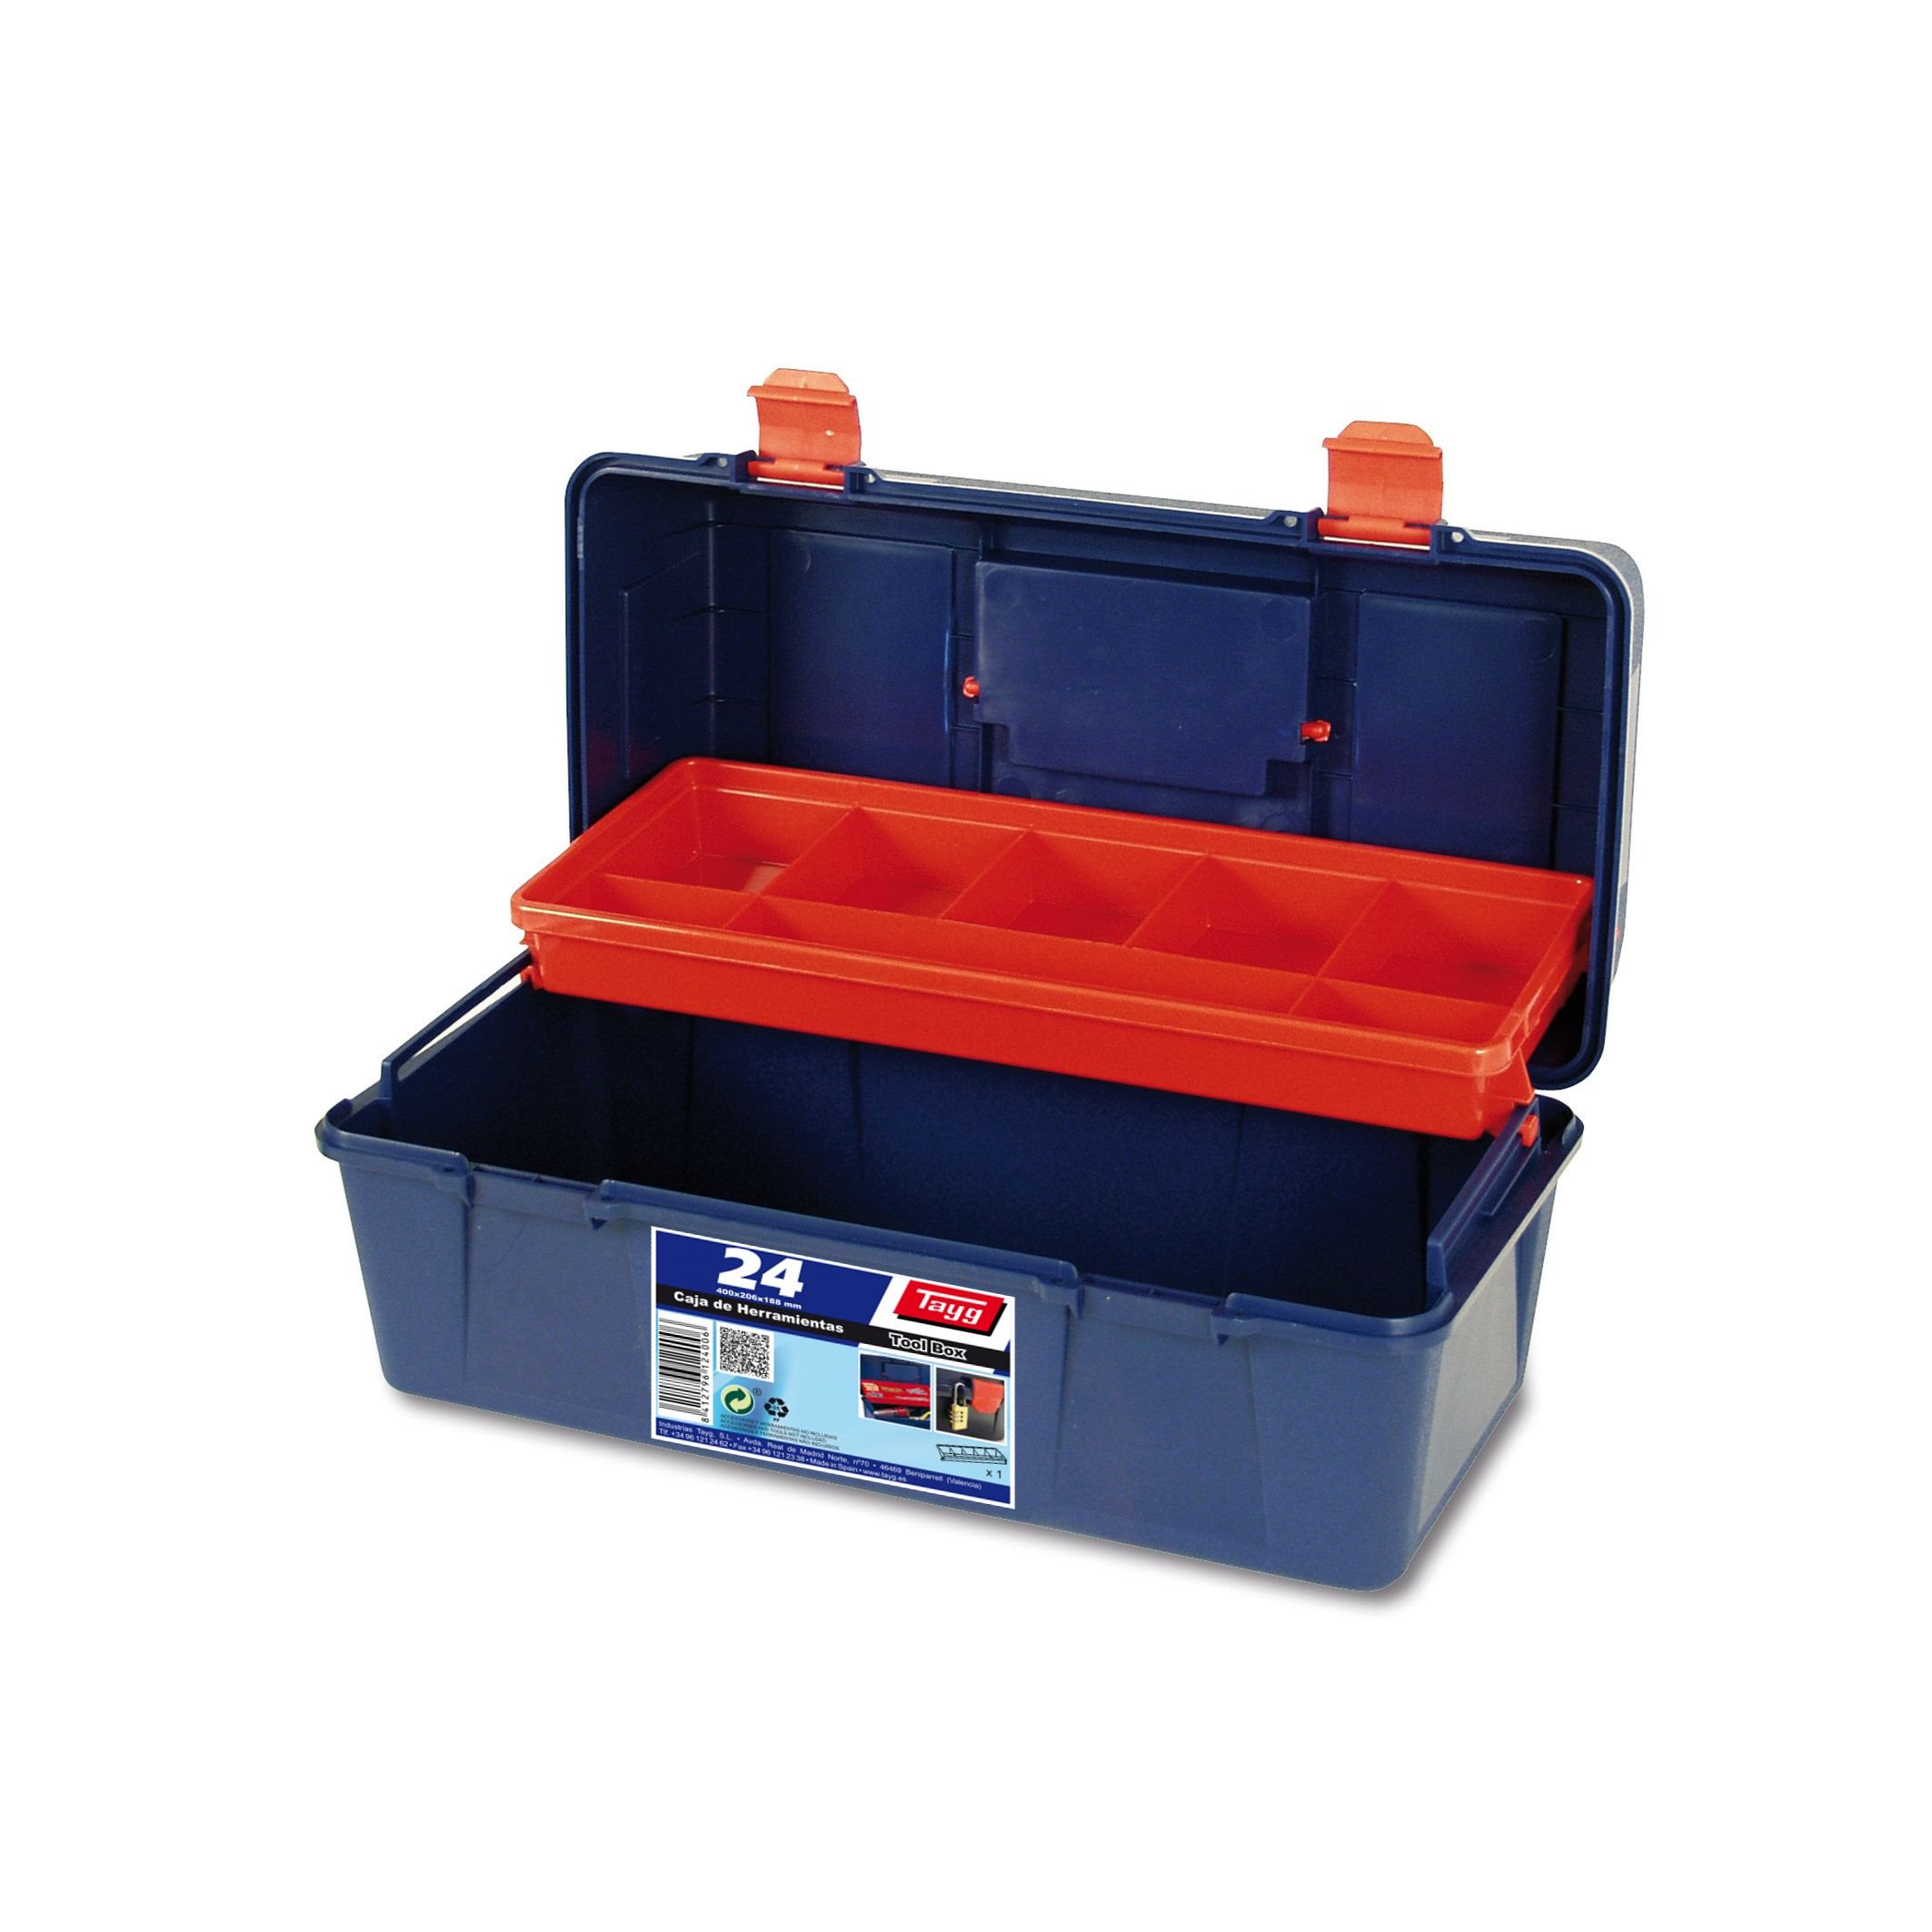 Ящик пластиковий для інструментів Tayg Box 24 Caja htas, 40х20,6х18,8 см, синій (124006) - фото 3